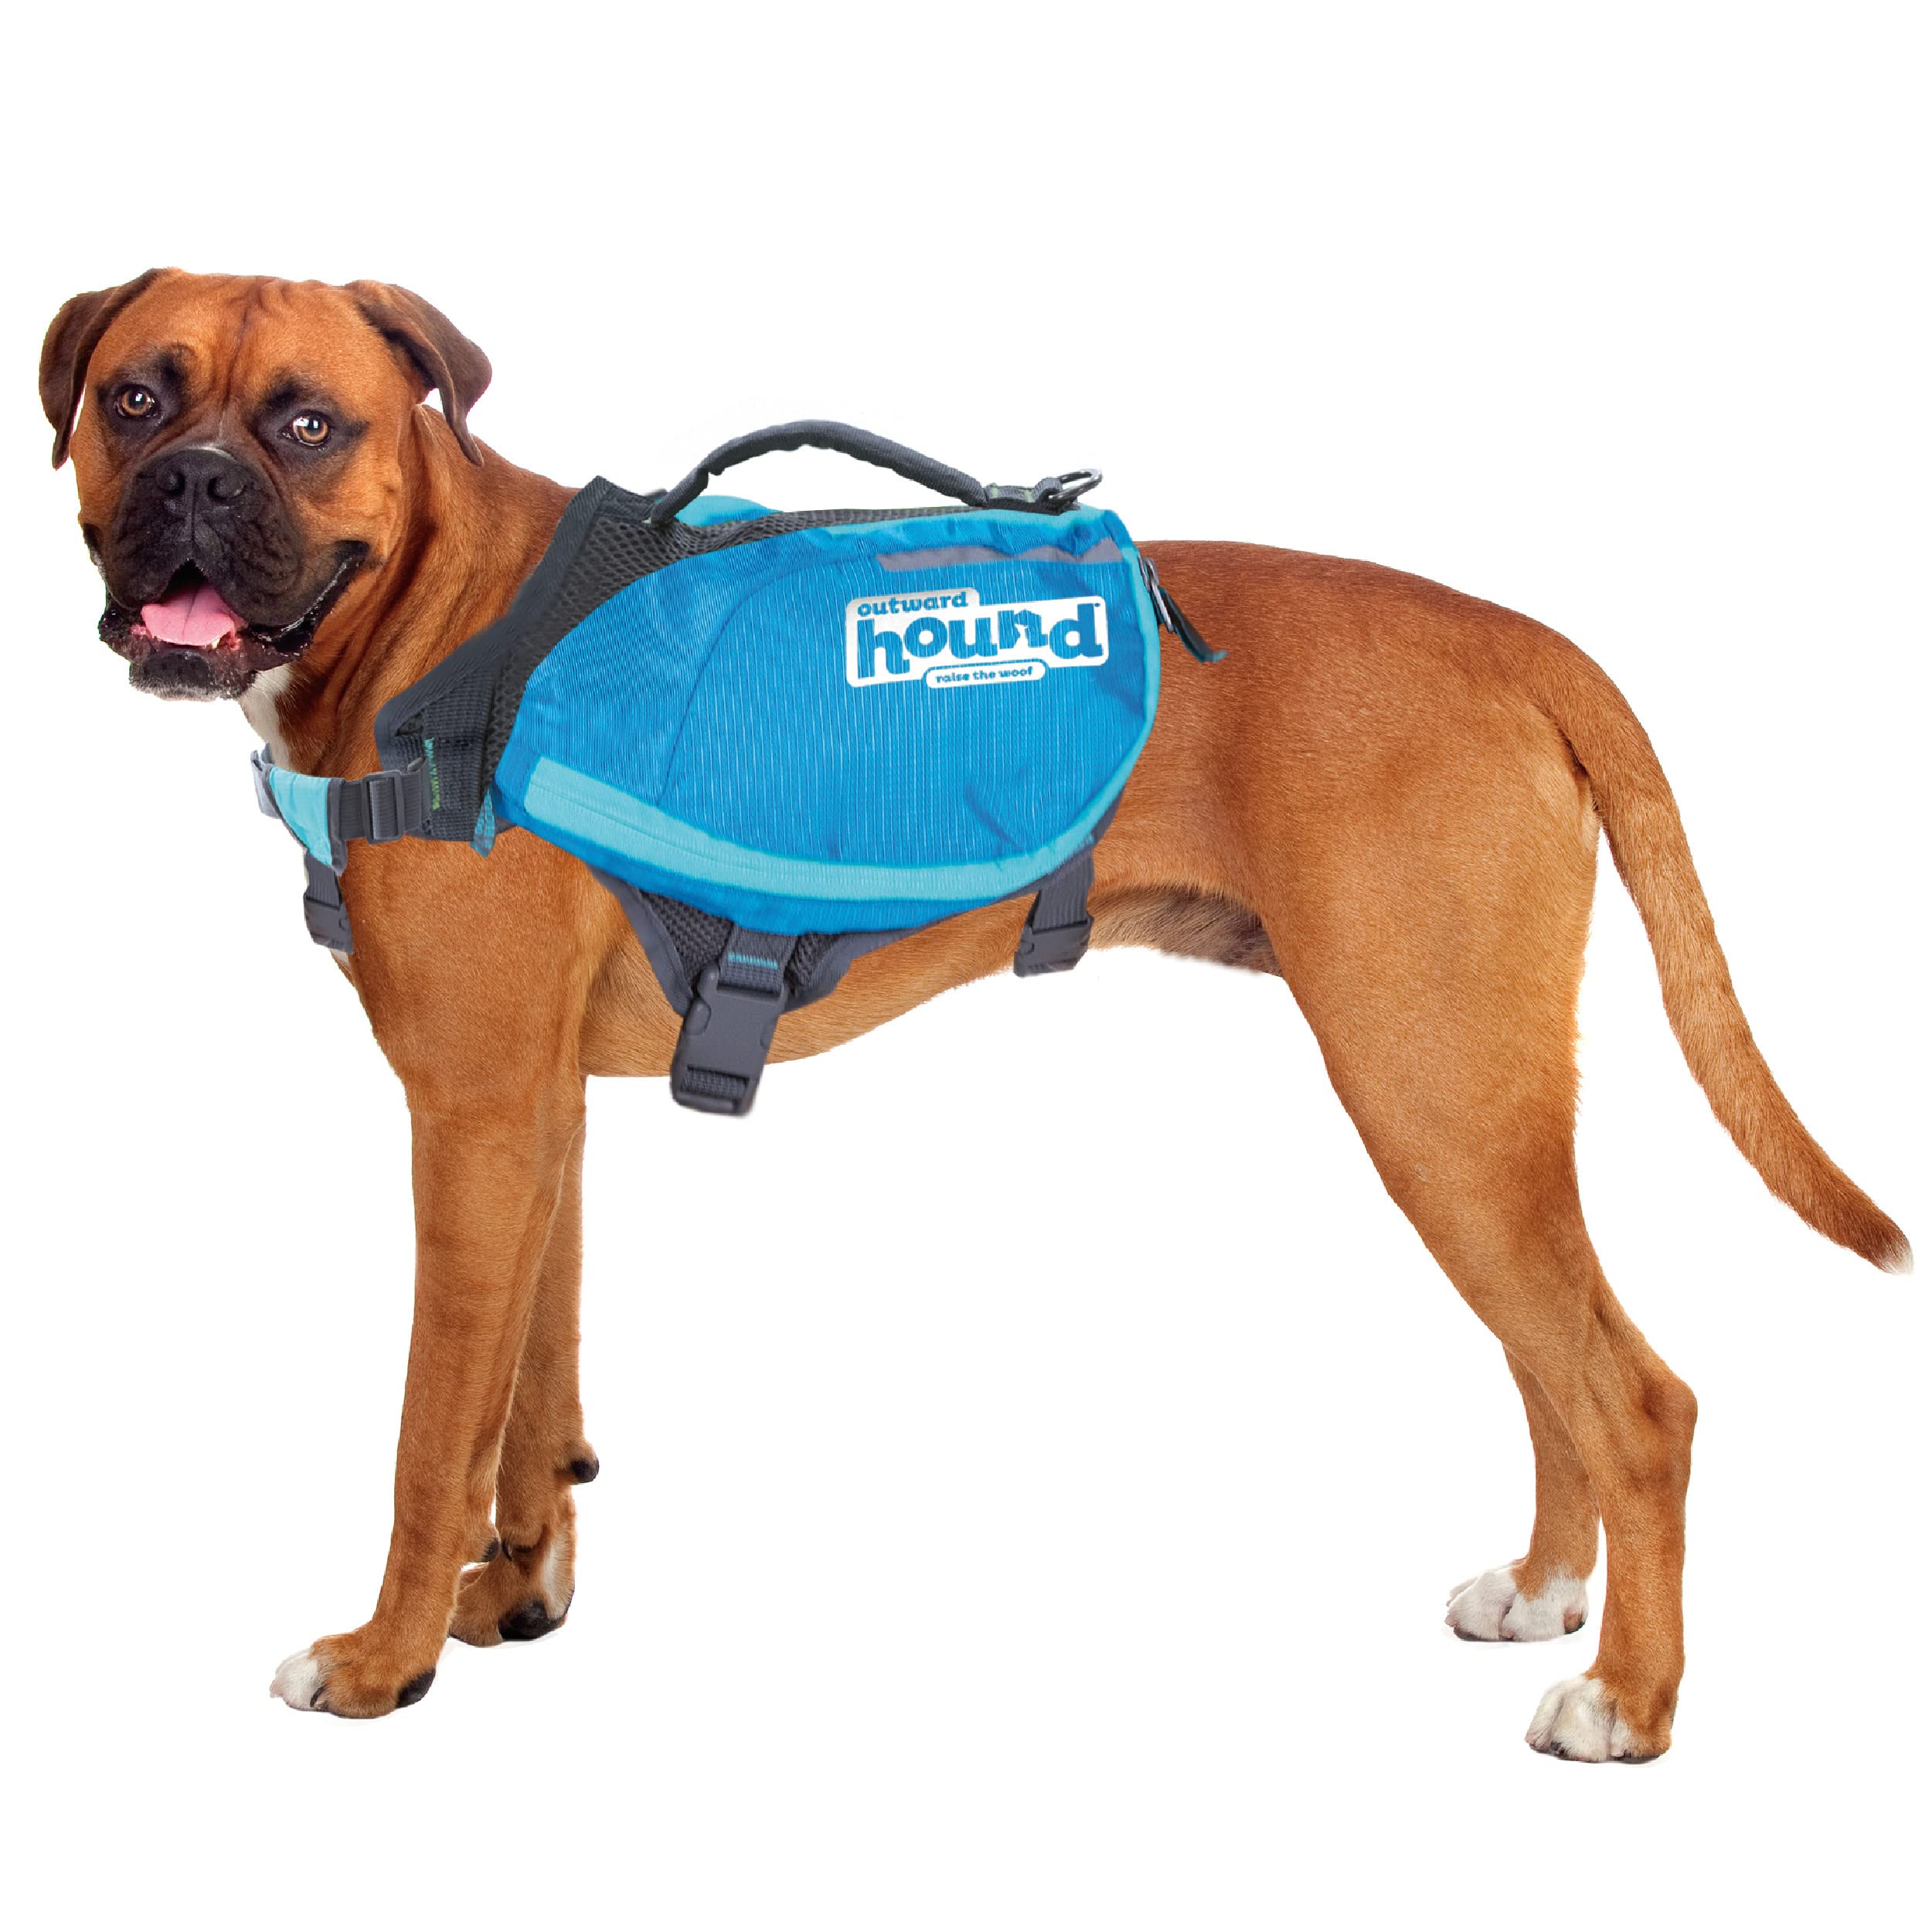 Kyjen 22005 Outward Hound DayPak Hunde-Rucksack Tasche im Satteltaschenstil, verstellbar, Größe L, blau